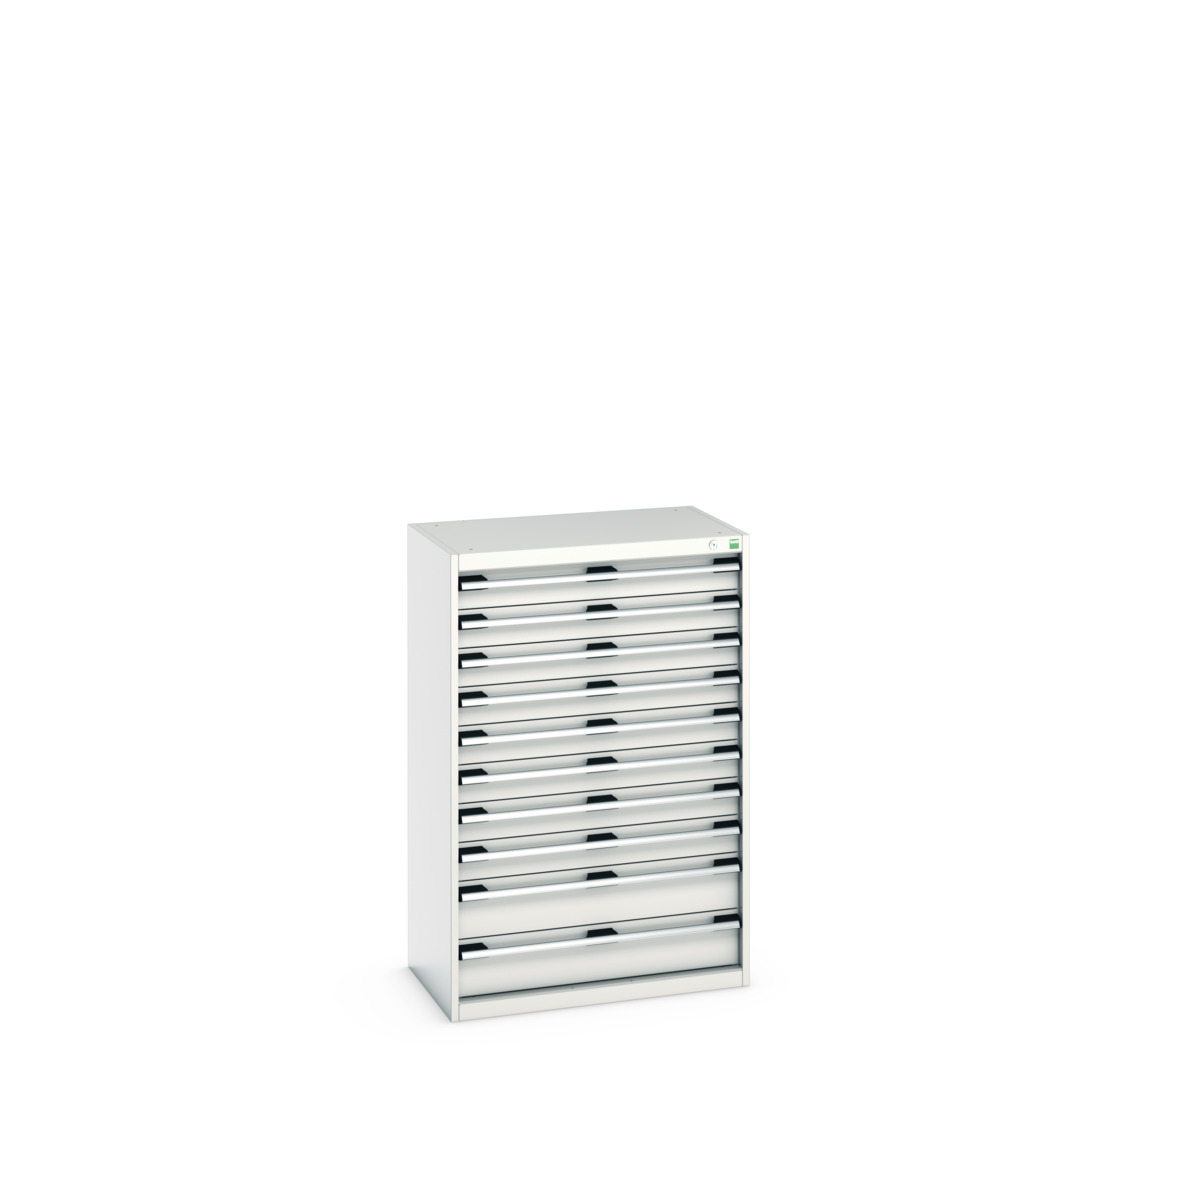 40012108.16V - cubio drawer cabinet